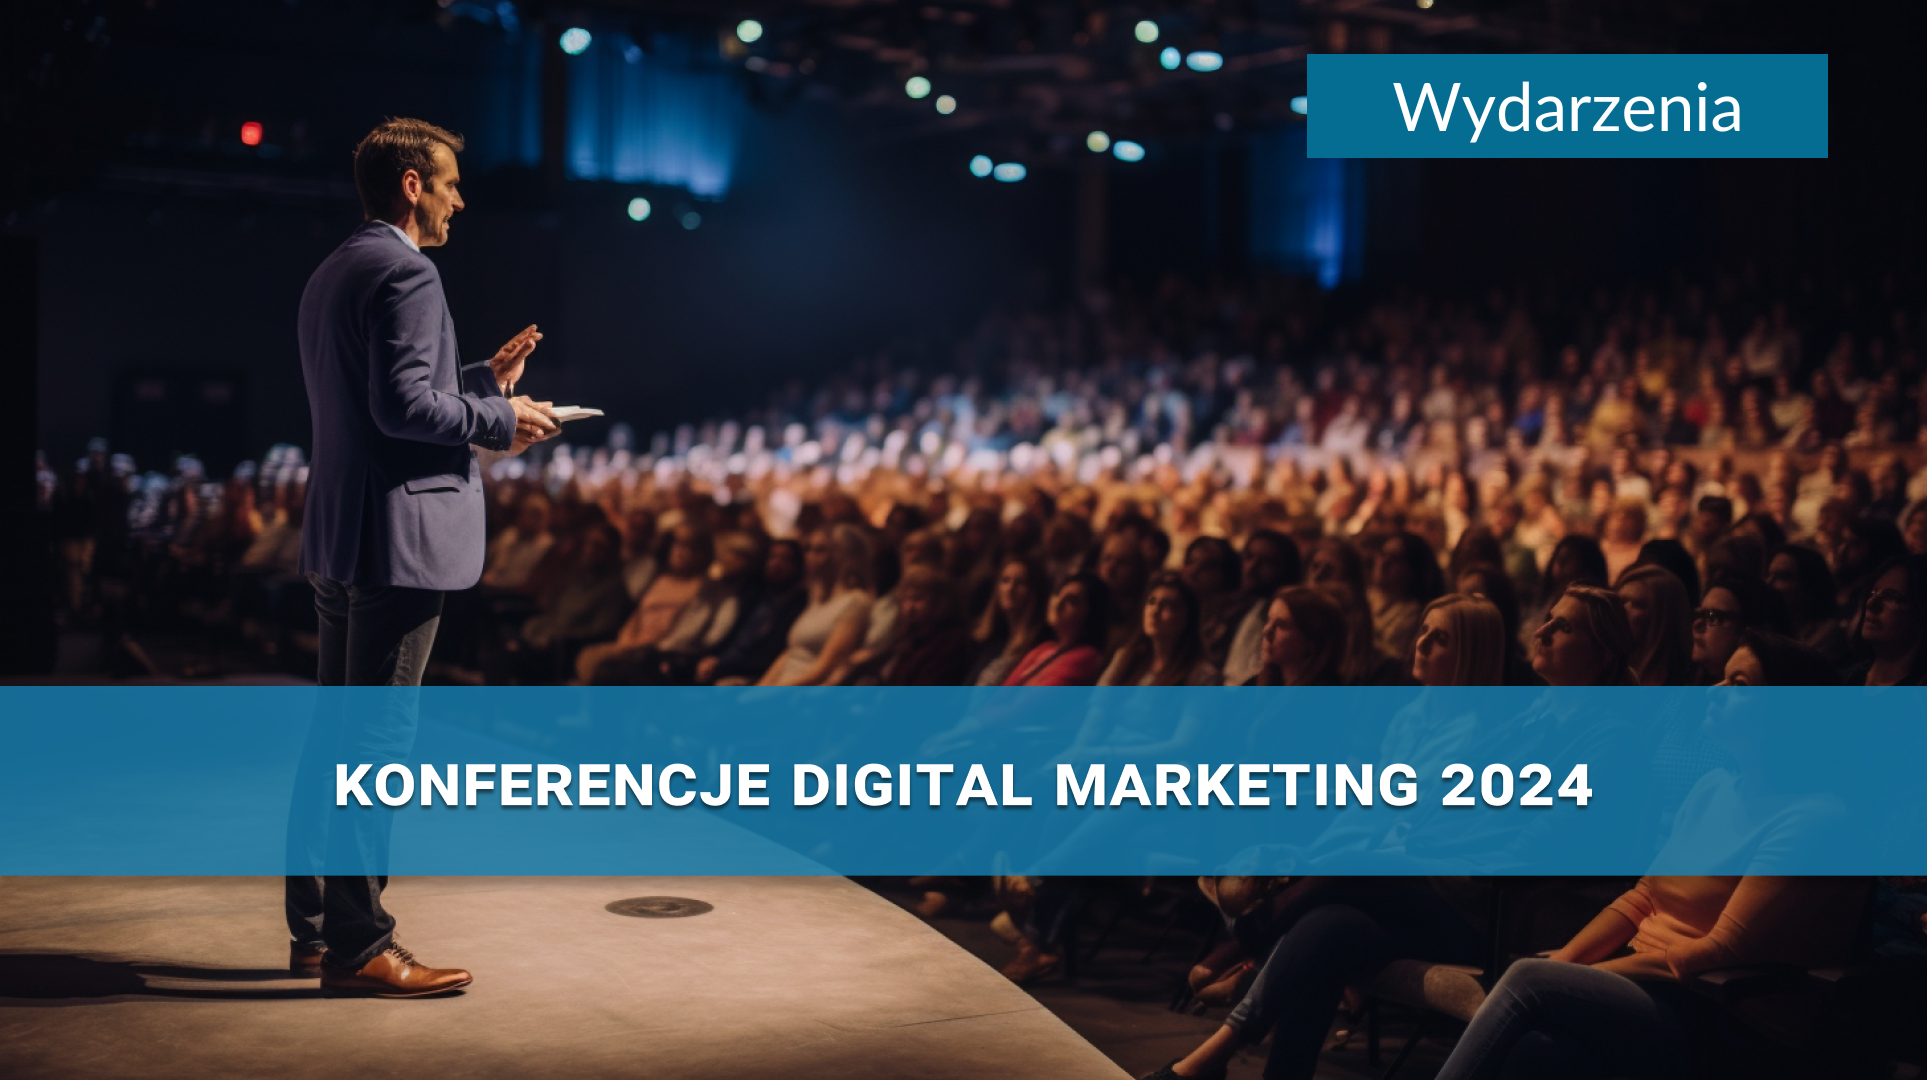 Konferencje digital marketing w 2024 - zestawienie najciekawszych wydarzeń w branży